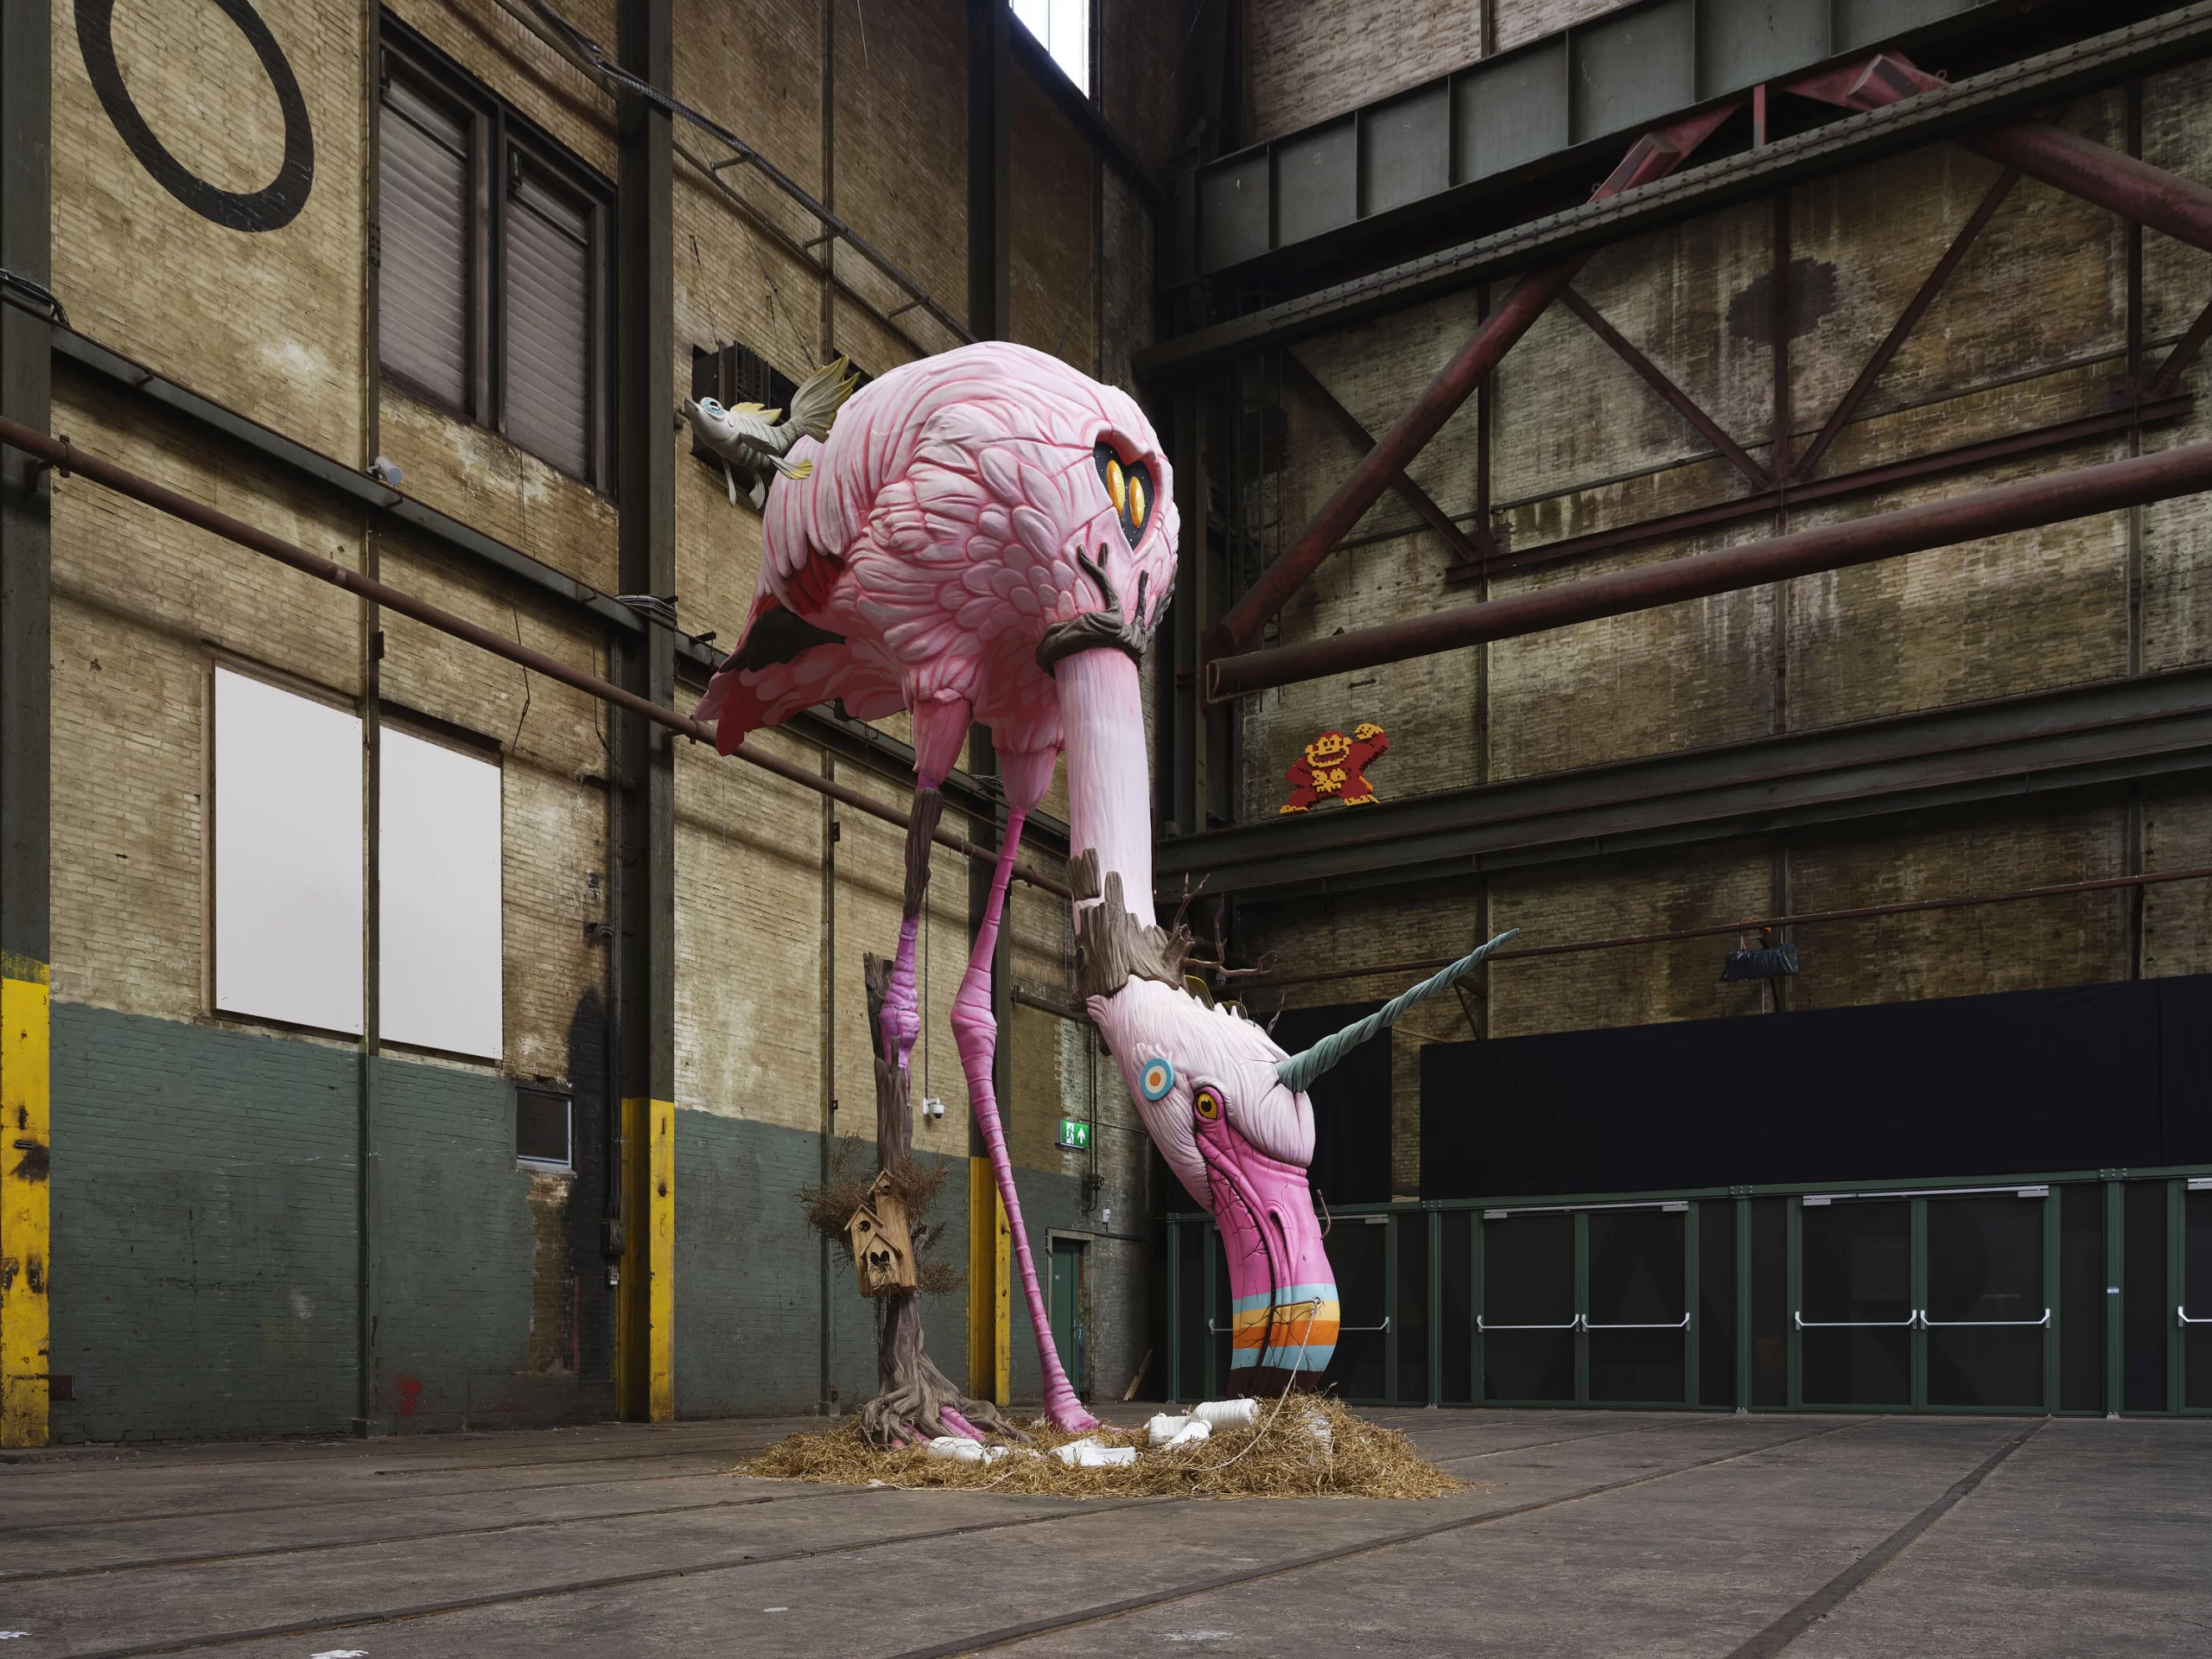 Artistas Falleros colaboran con la exposición de arte urbano de Dulk en Holanda